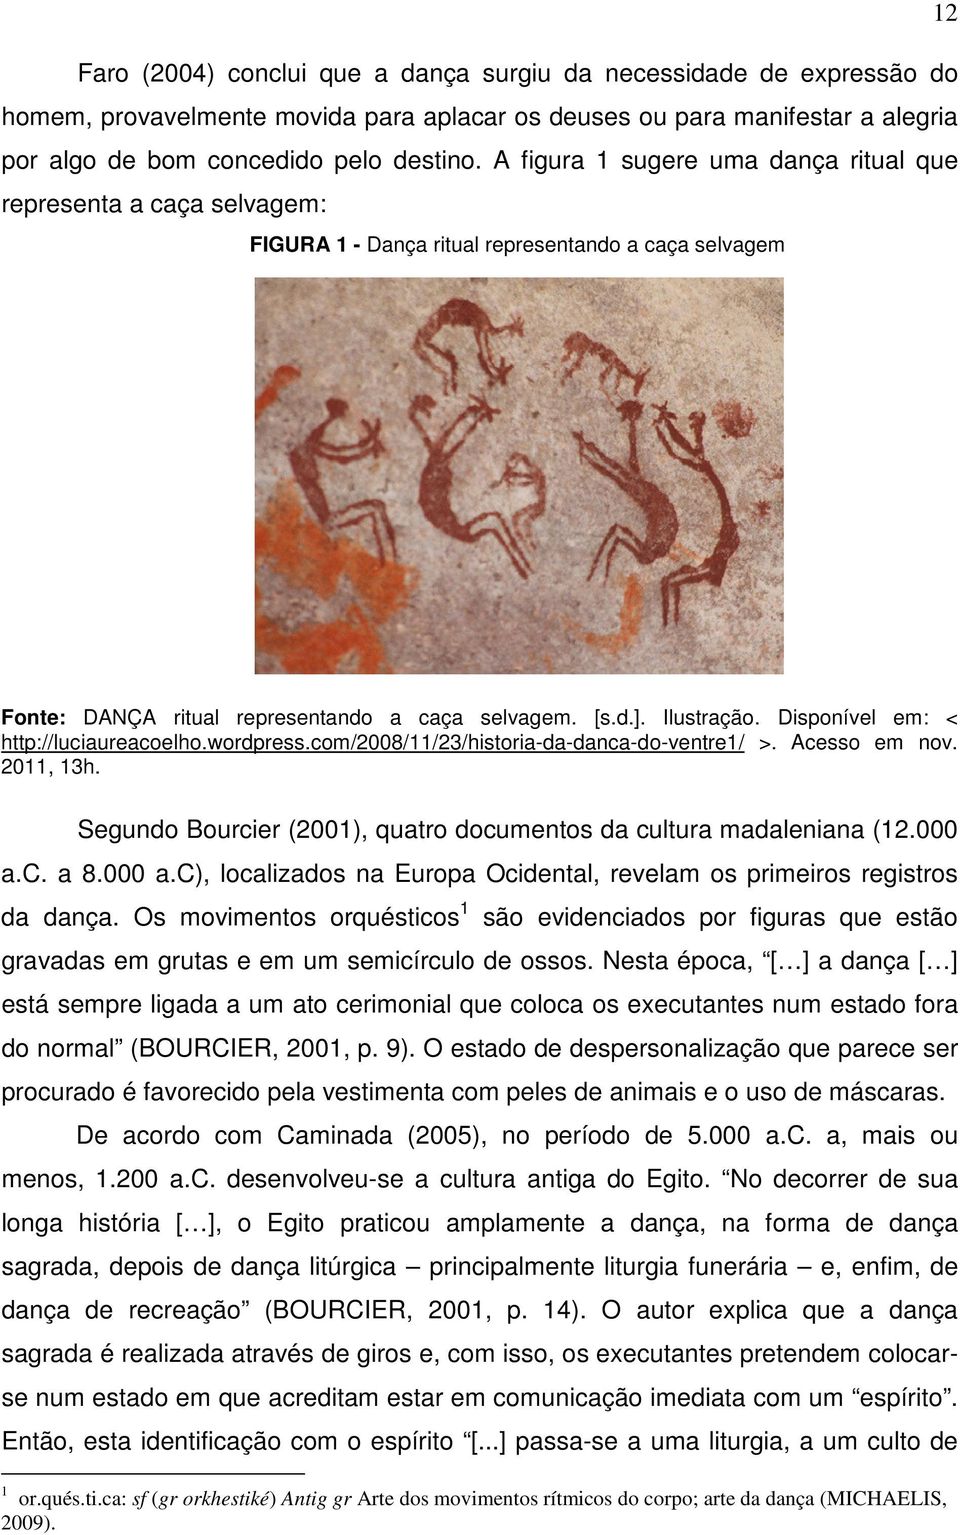 Disponível em: < http://luciaureacoelho.wordpress.com/2008/11/23/historia-da-danca-do-ventre1/ >. Acesso em nov. 2011, 13h. Segundo Bourcier (2001), quatro documentos da cultura madaleniana (12.000 a.